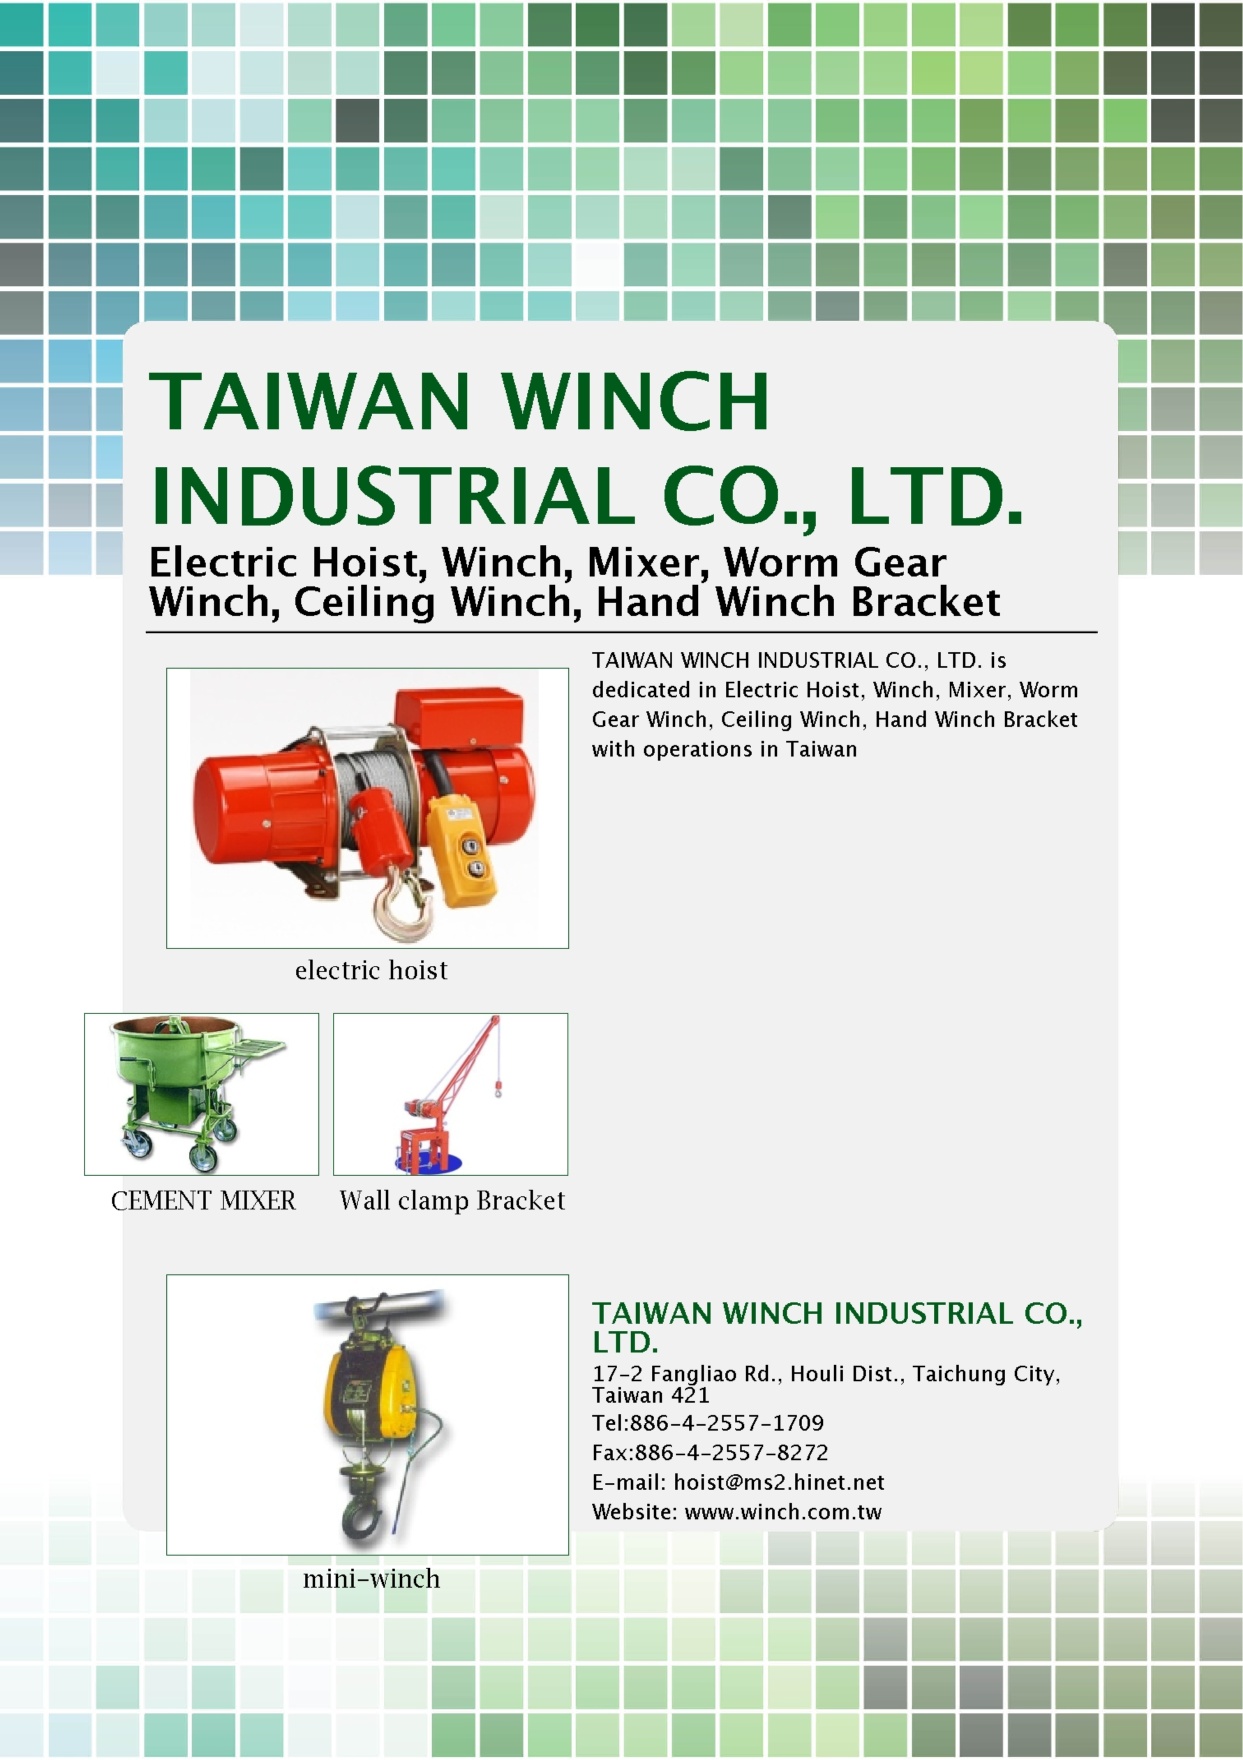 TAIWAN WINCH INDUSTRIAL CO., LTD.